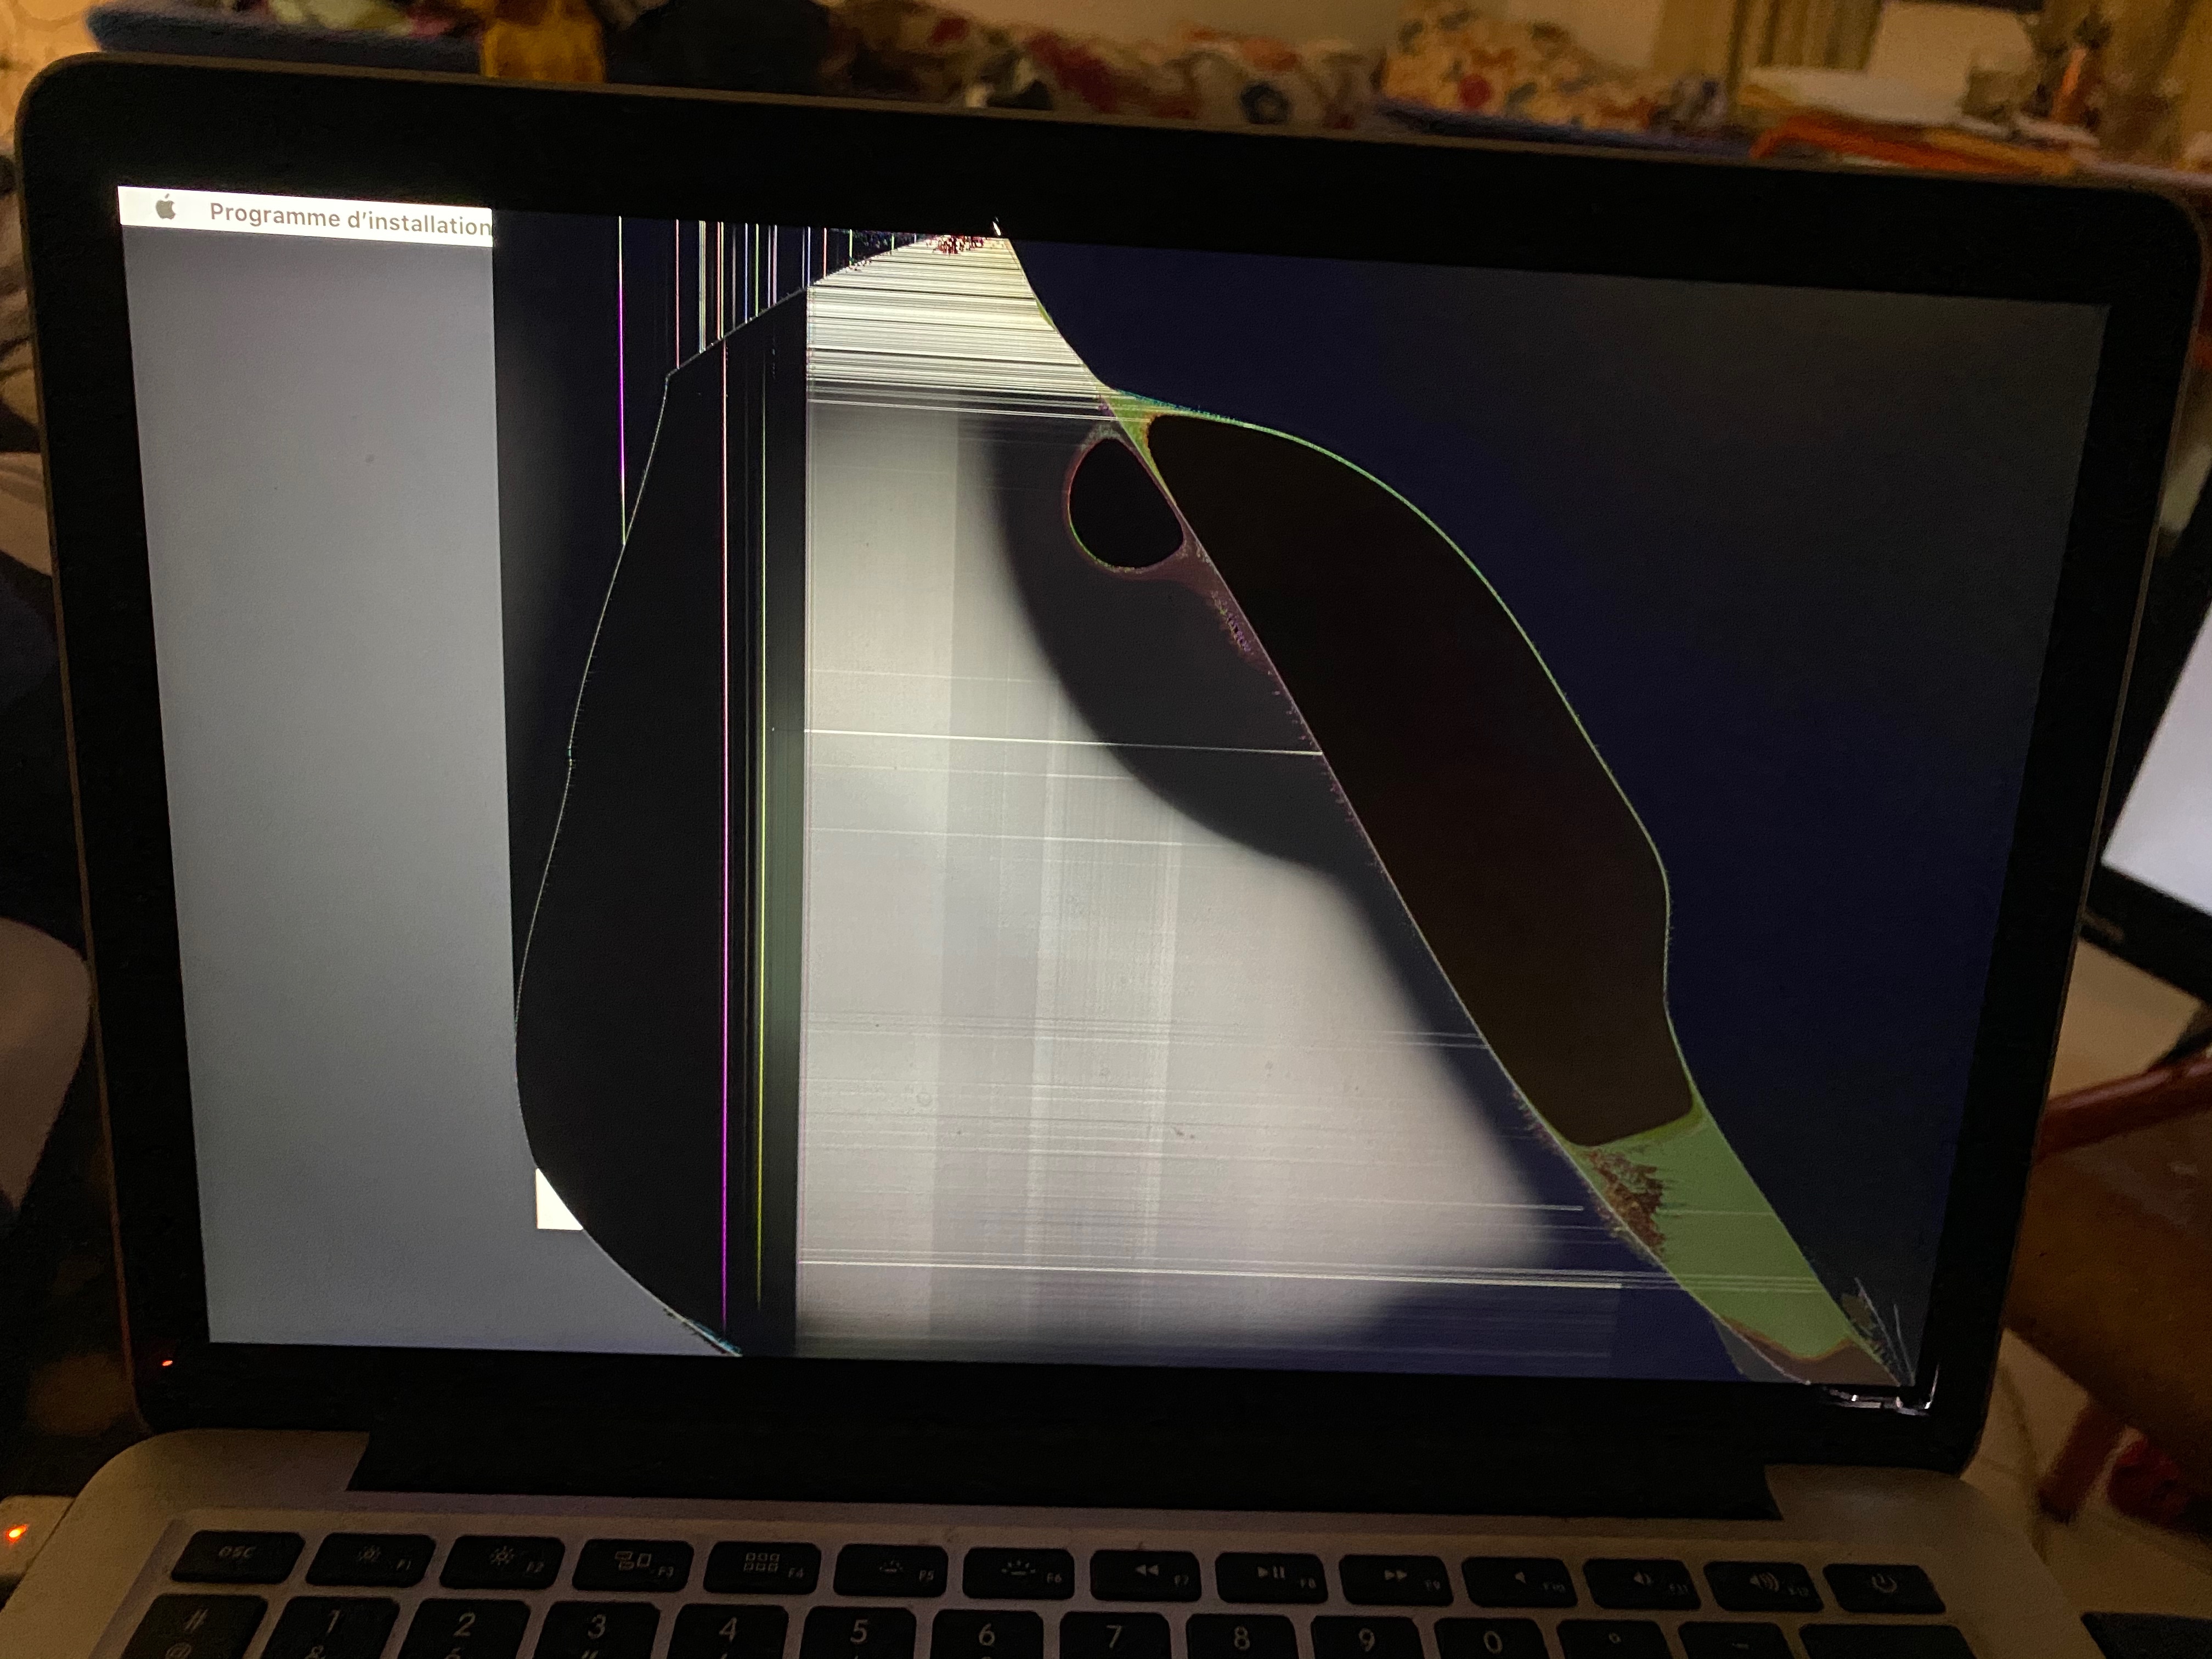 Broken Screen Apple Community, How To Mirror Mac With Broken Screen